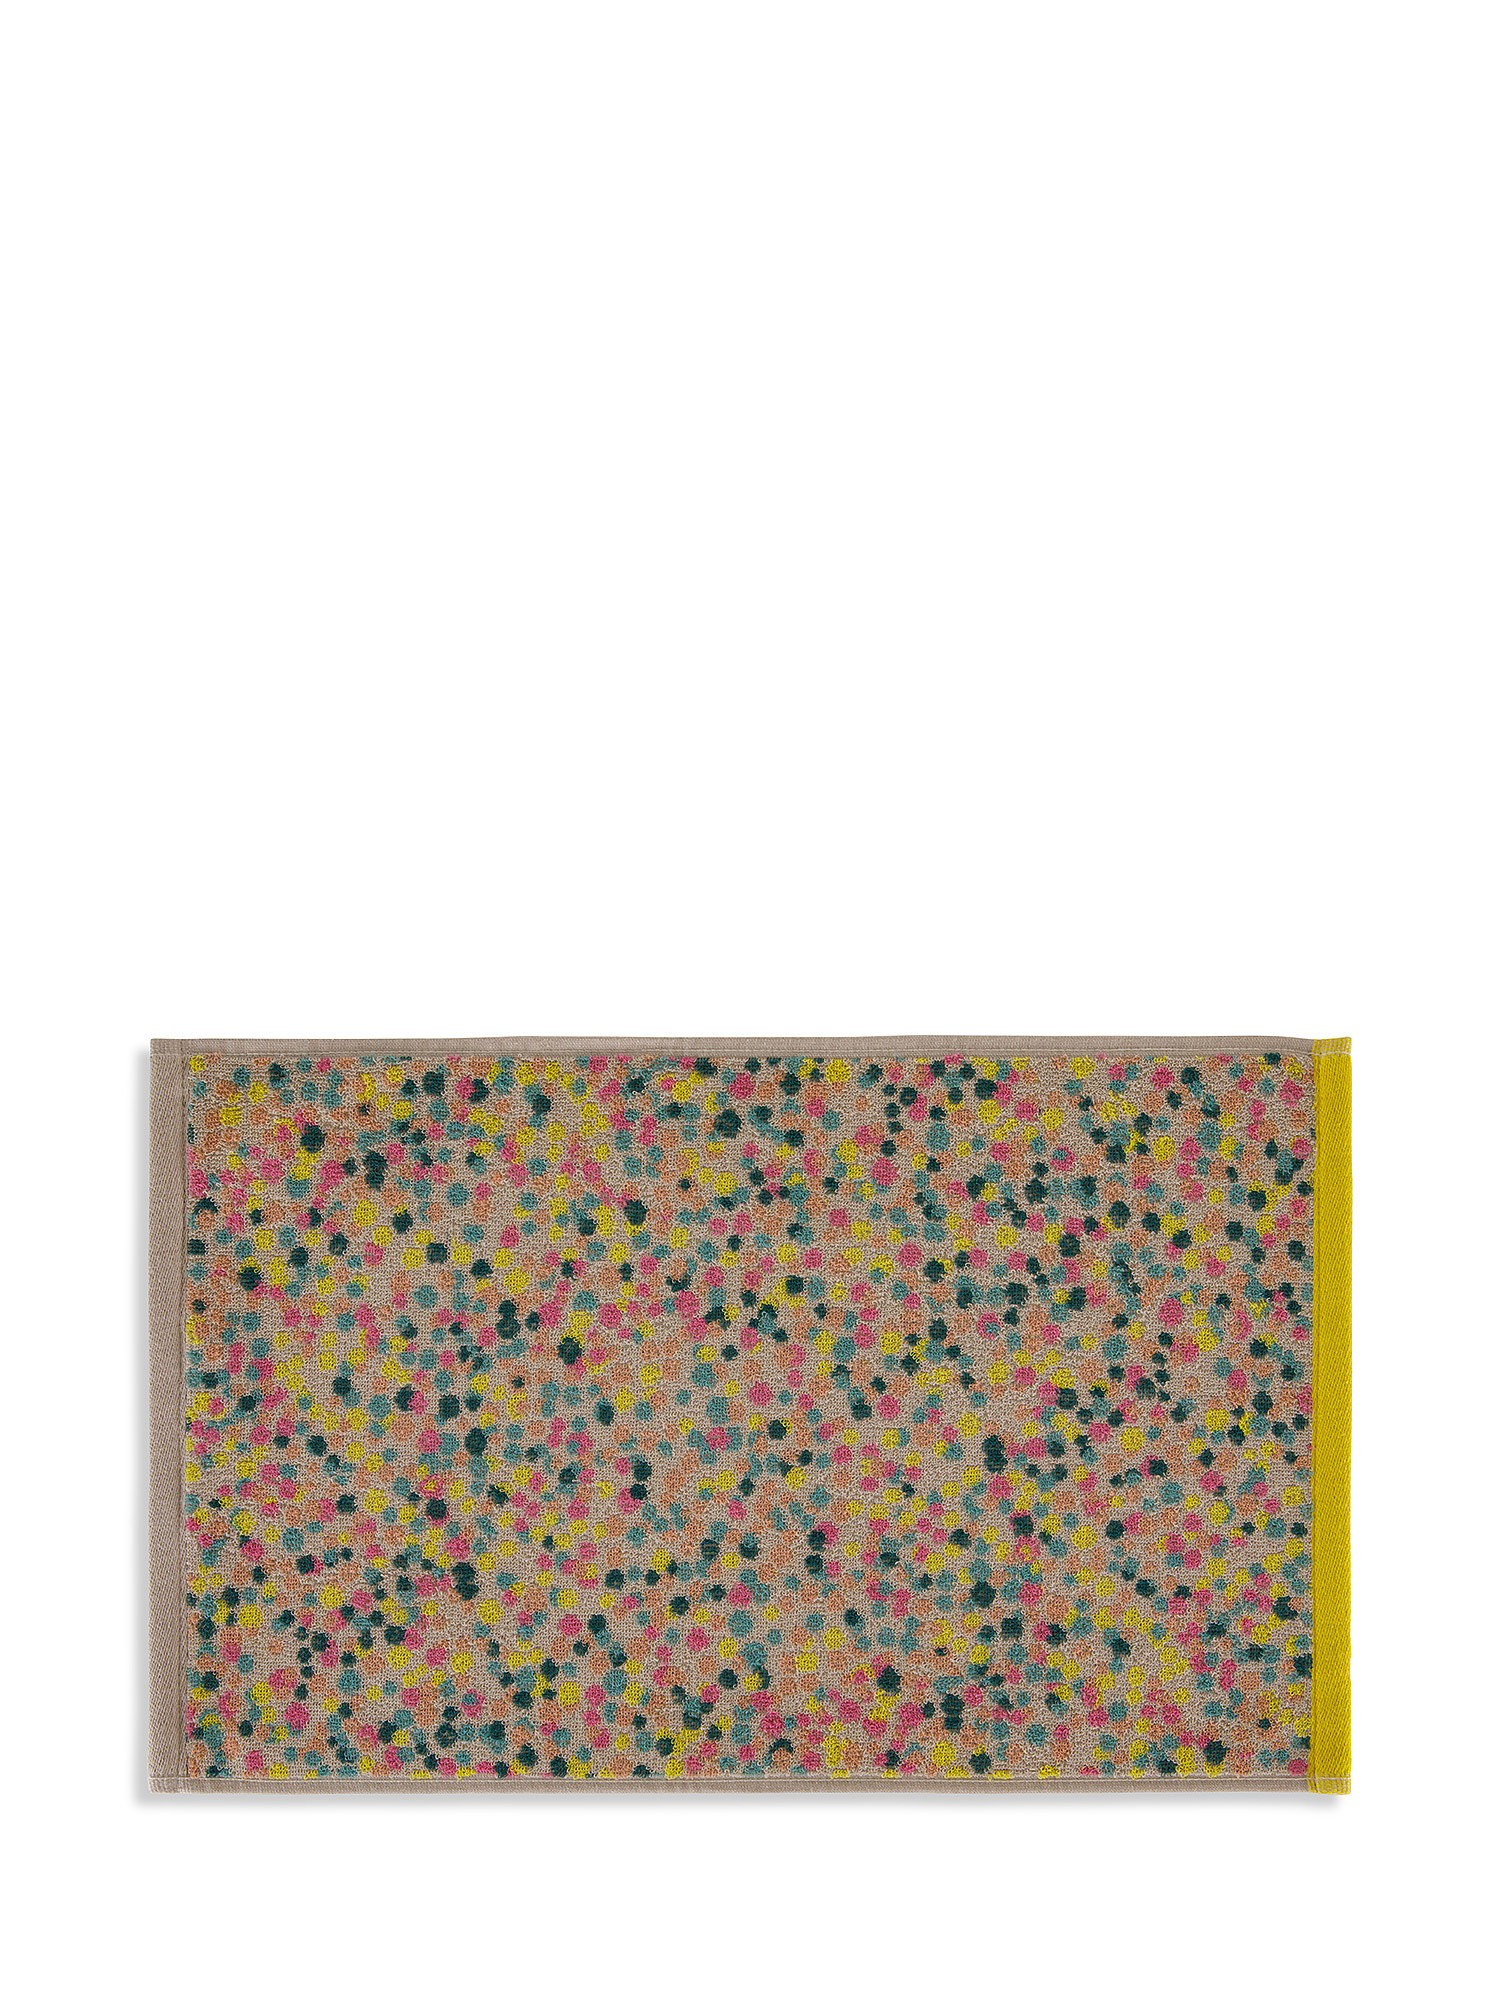 Asciugamano puro cotone tinto filo motivo a pallini, Multicolor, large image number 1